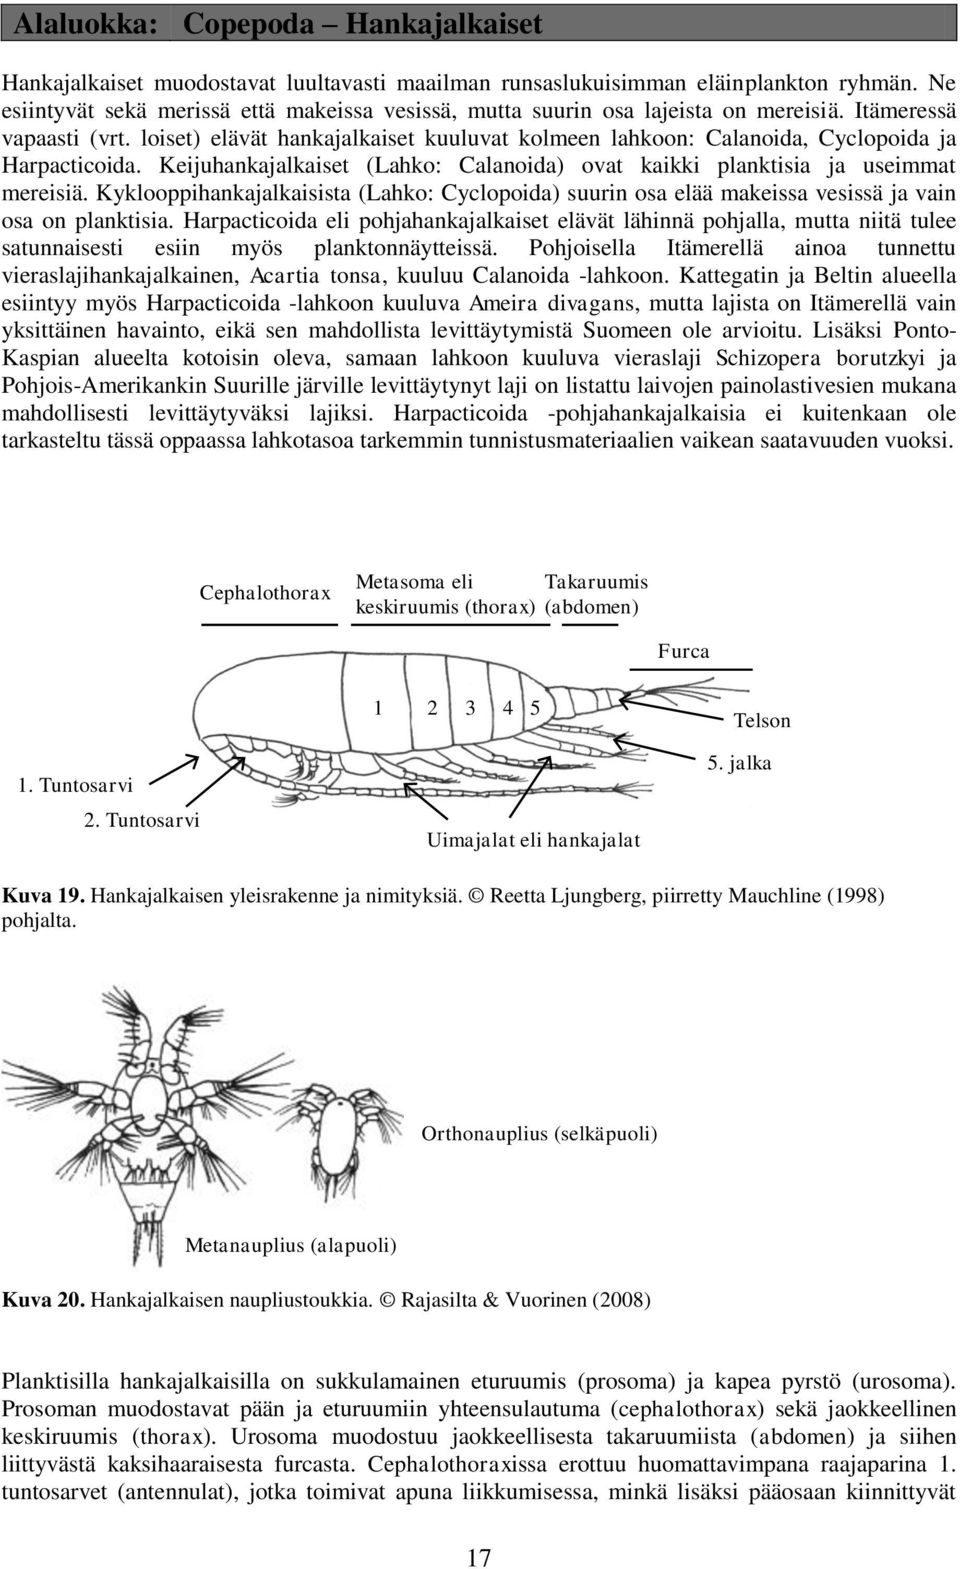 loiset) elävät hankajalkaiset kuuluvat kolmeen lahkoon: Calanoida, Cyclopoida ja Harpacticoida. Keijuhankajalkaiset (Lahko: Calanoida) ovat kaikki planktisia ja useimmat mereisiä.